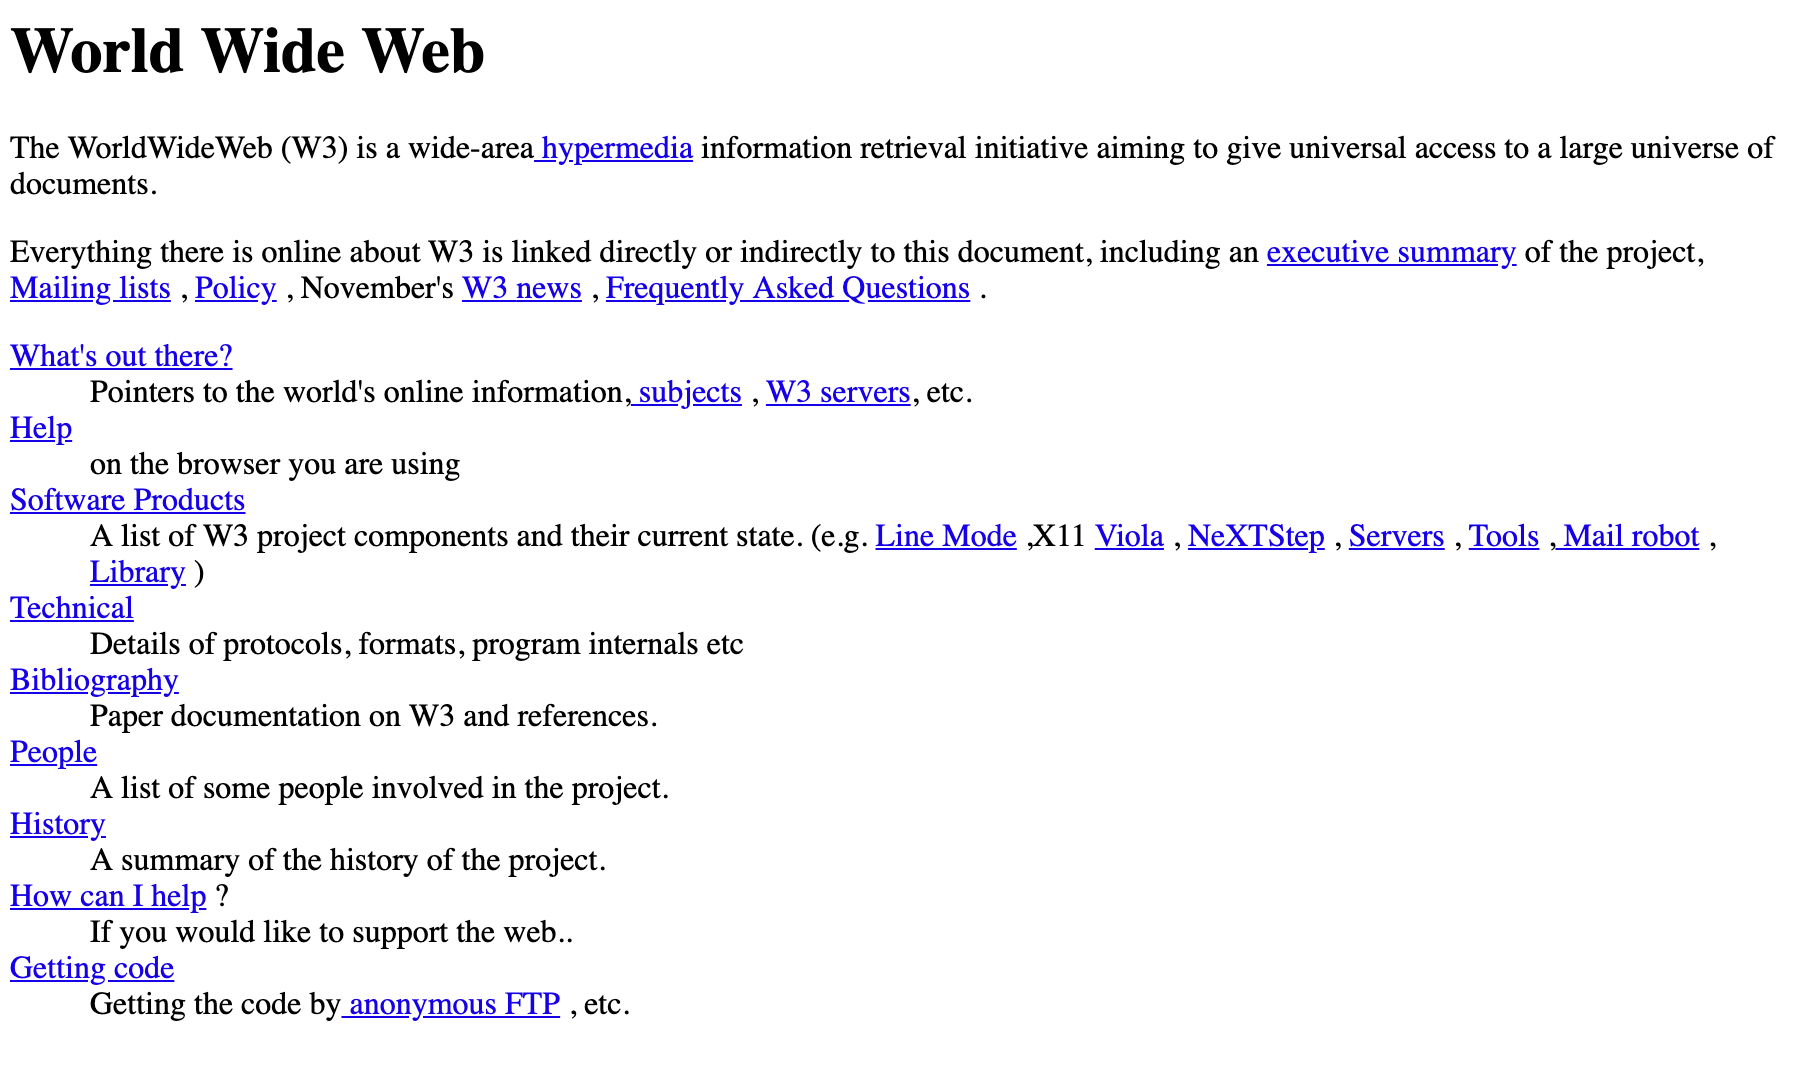 Image du premier site Internet sur Internet, créé en 1991